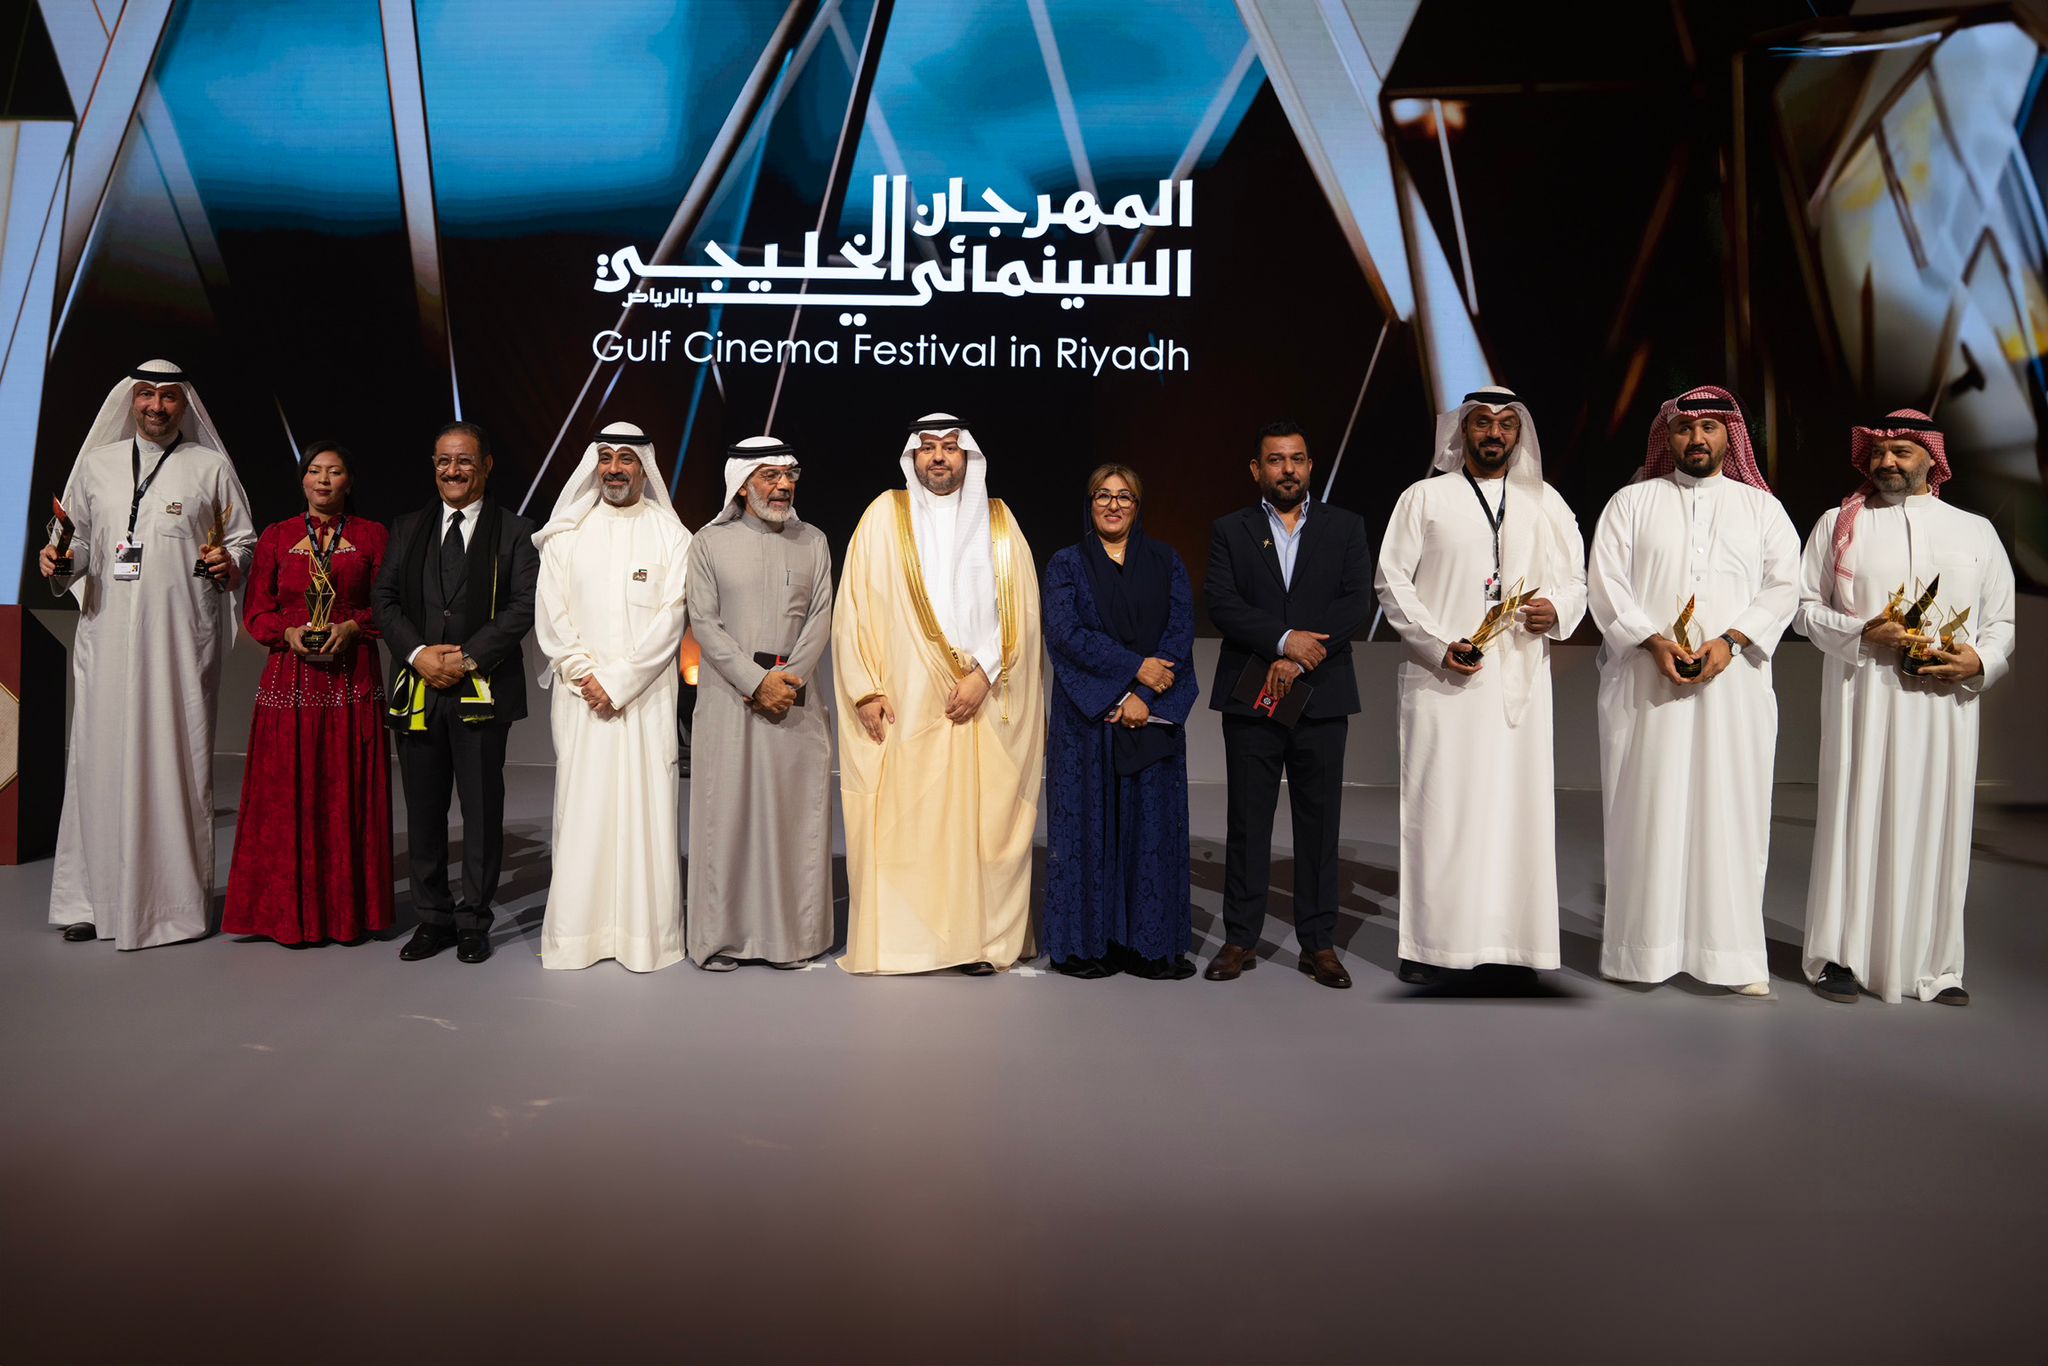 اختتام المهرجان السينمائي الخليجي في الرياض بعد 5 أيام من الإثراء السينمائي والتعاون الفني والثقافي